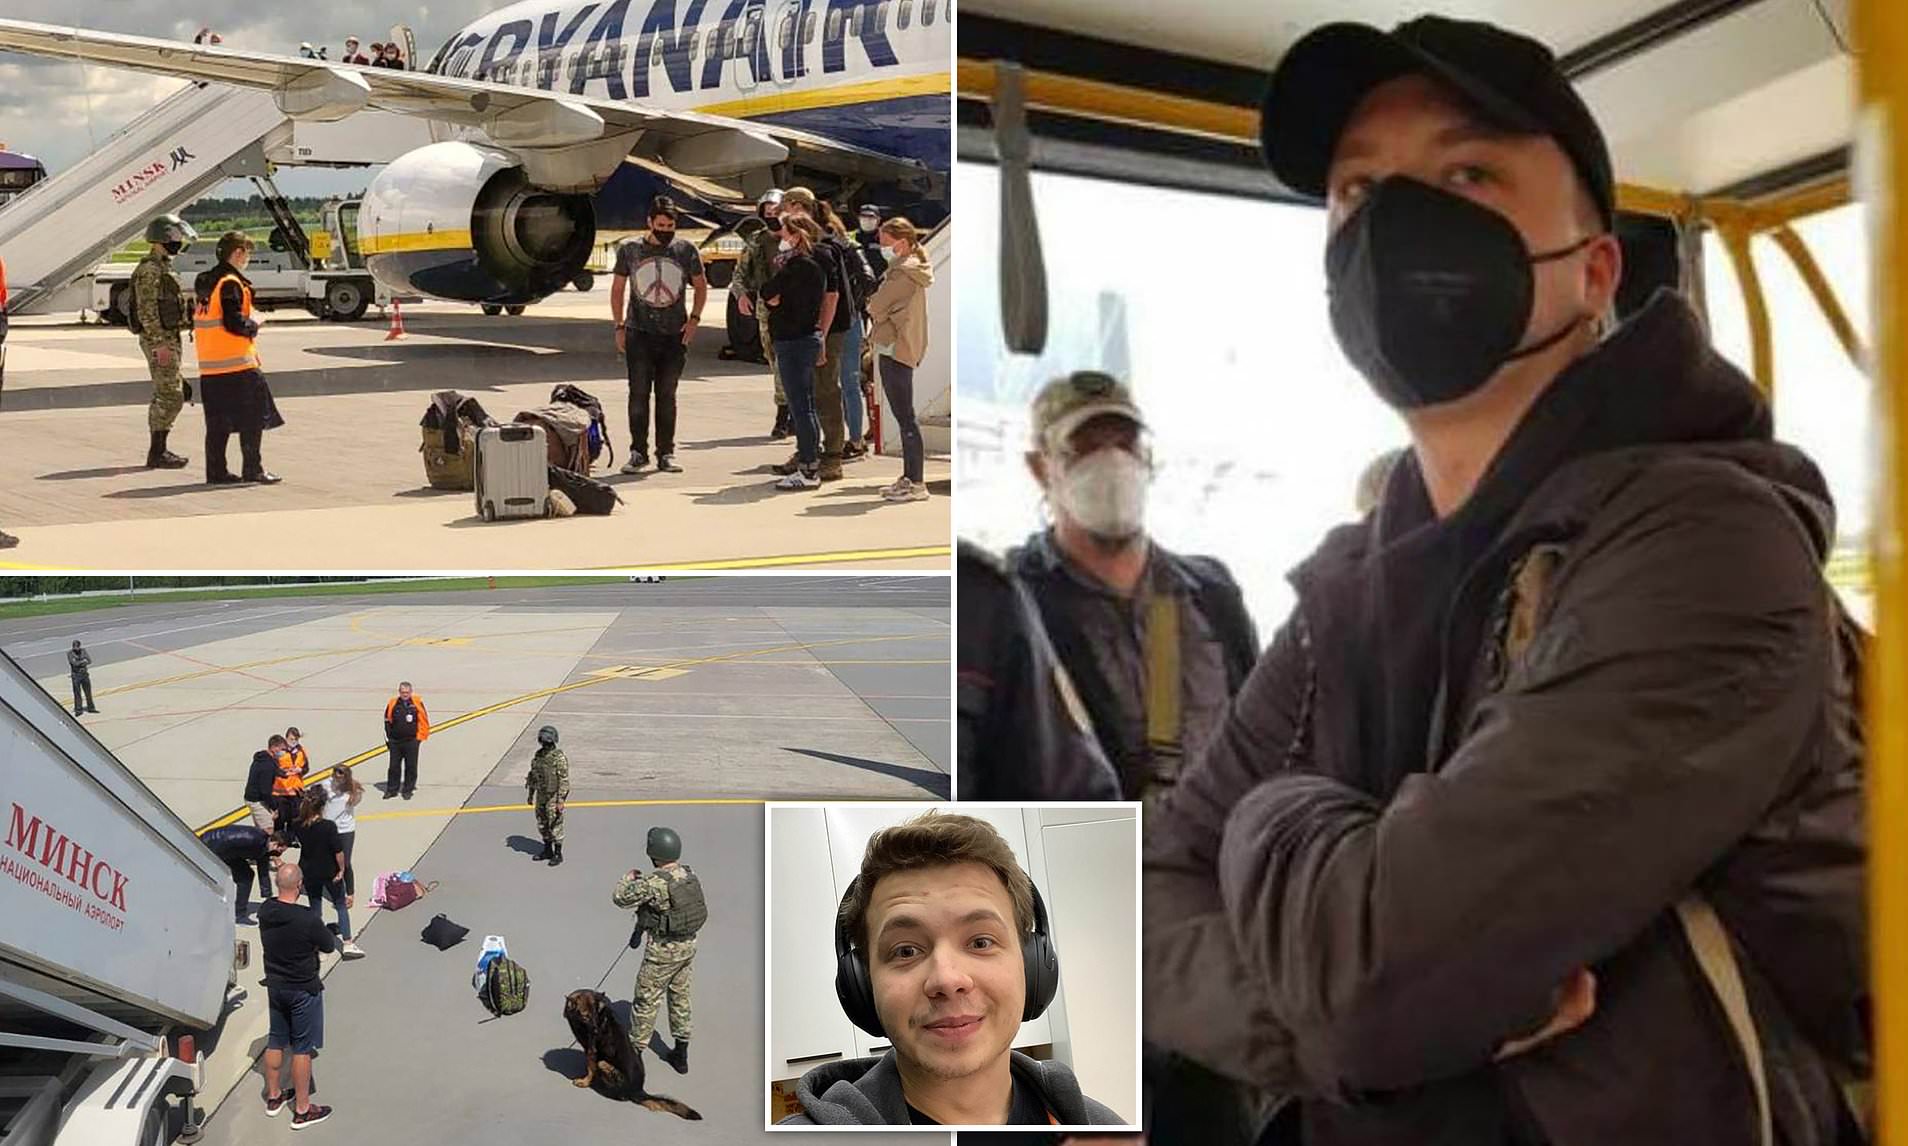 به دستور الکساندر لوکاشنکو رییس جمهور بلاروس یک هواپیمای مسافربری در فرودگاه مینسک به زمین نشانده شد تا منتقد او دستگیر شود